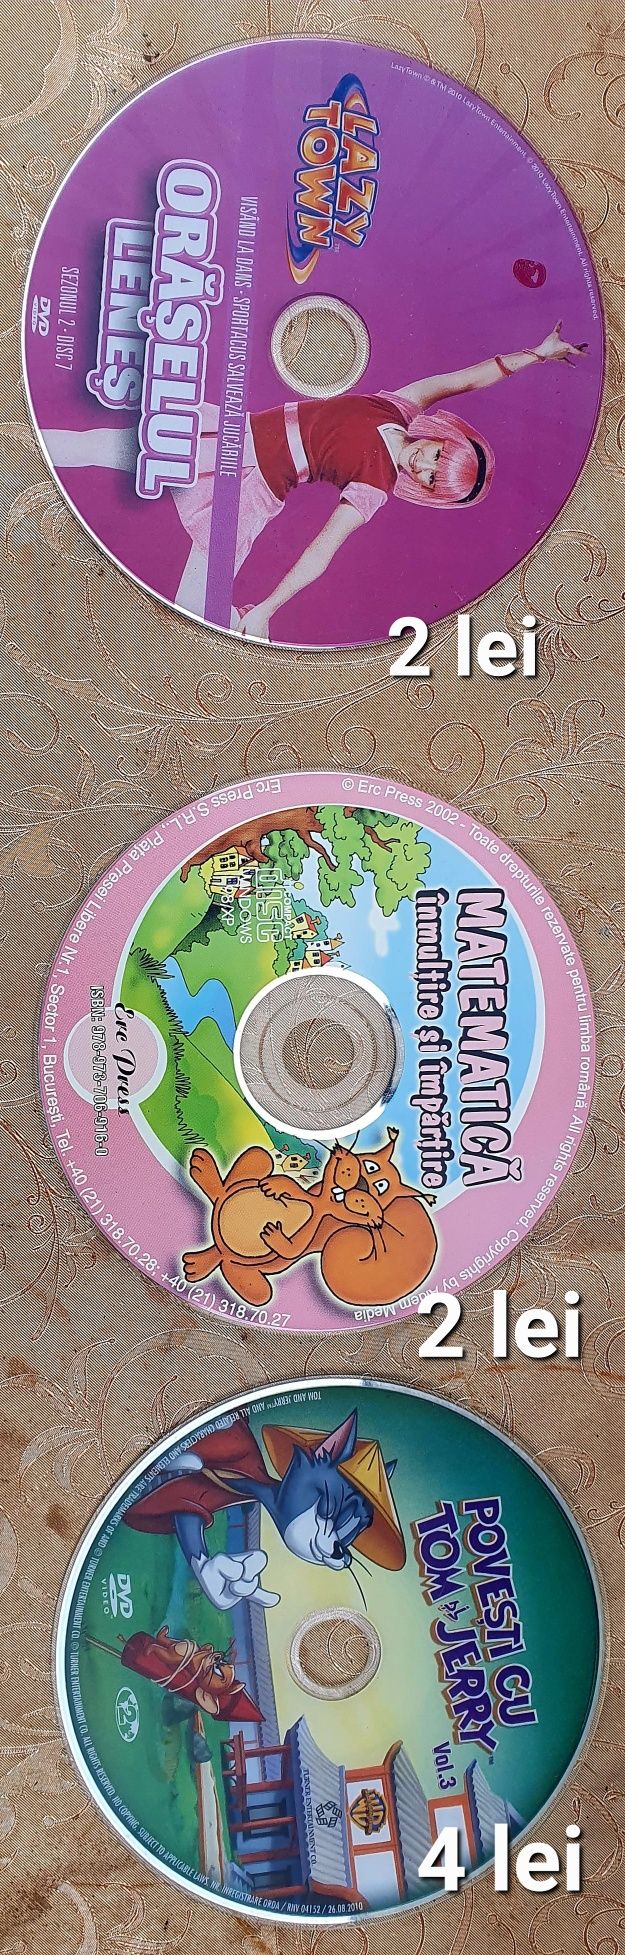 Dvd cu Ștrumfii (5 buc.) + casete audio vechi